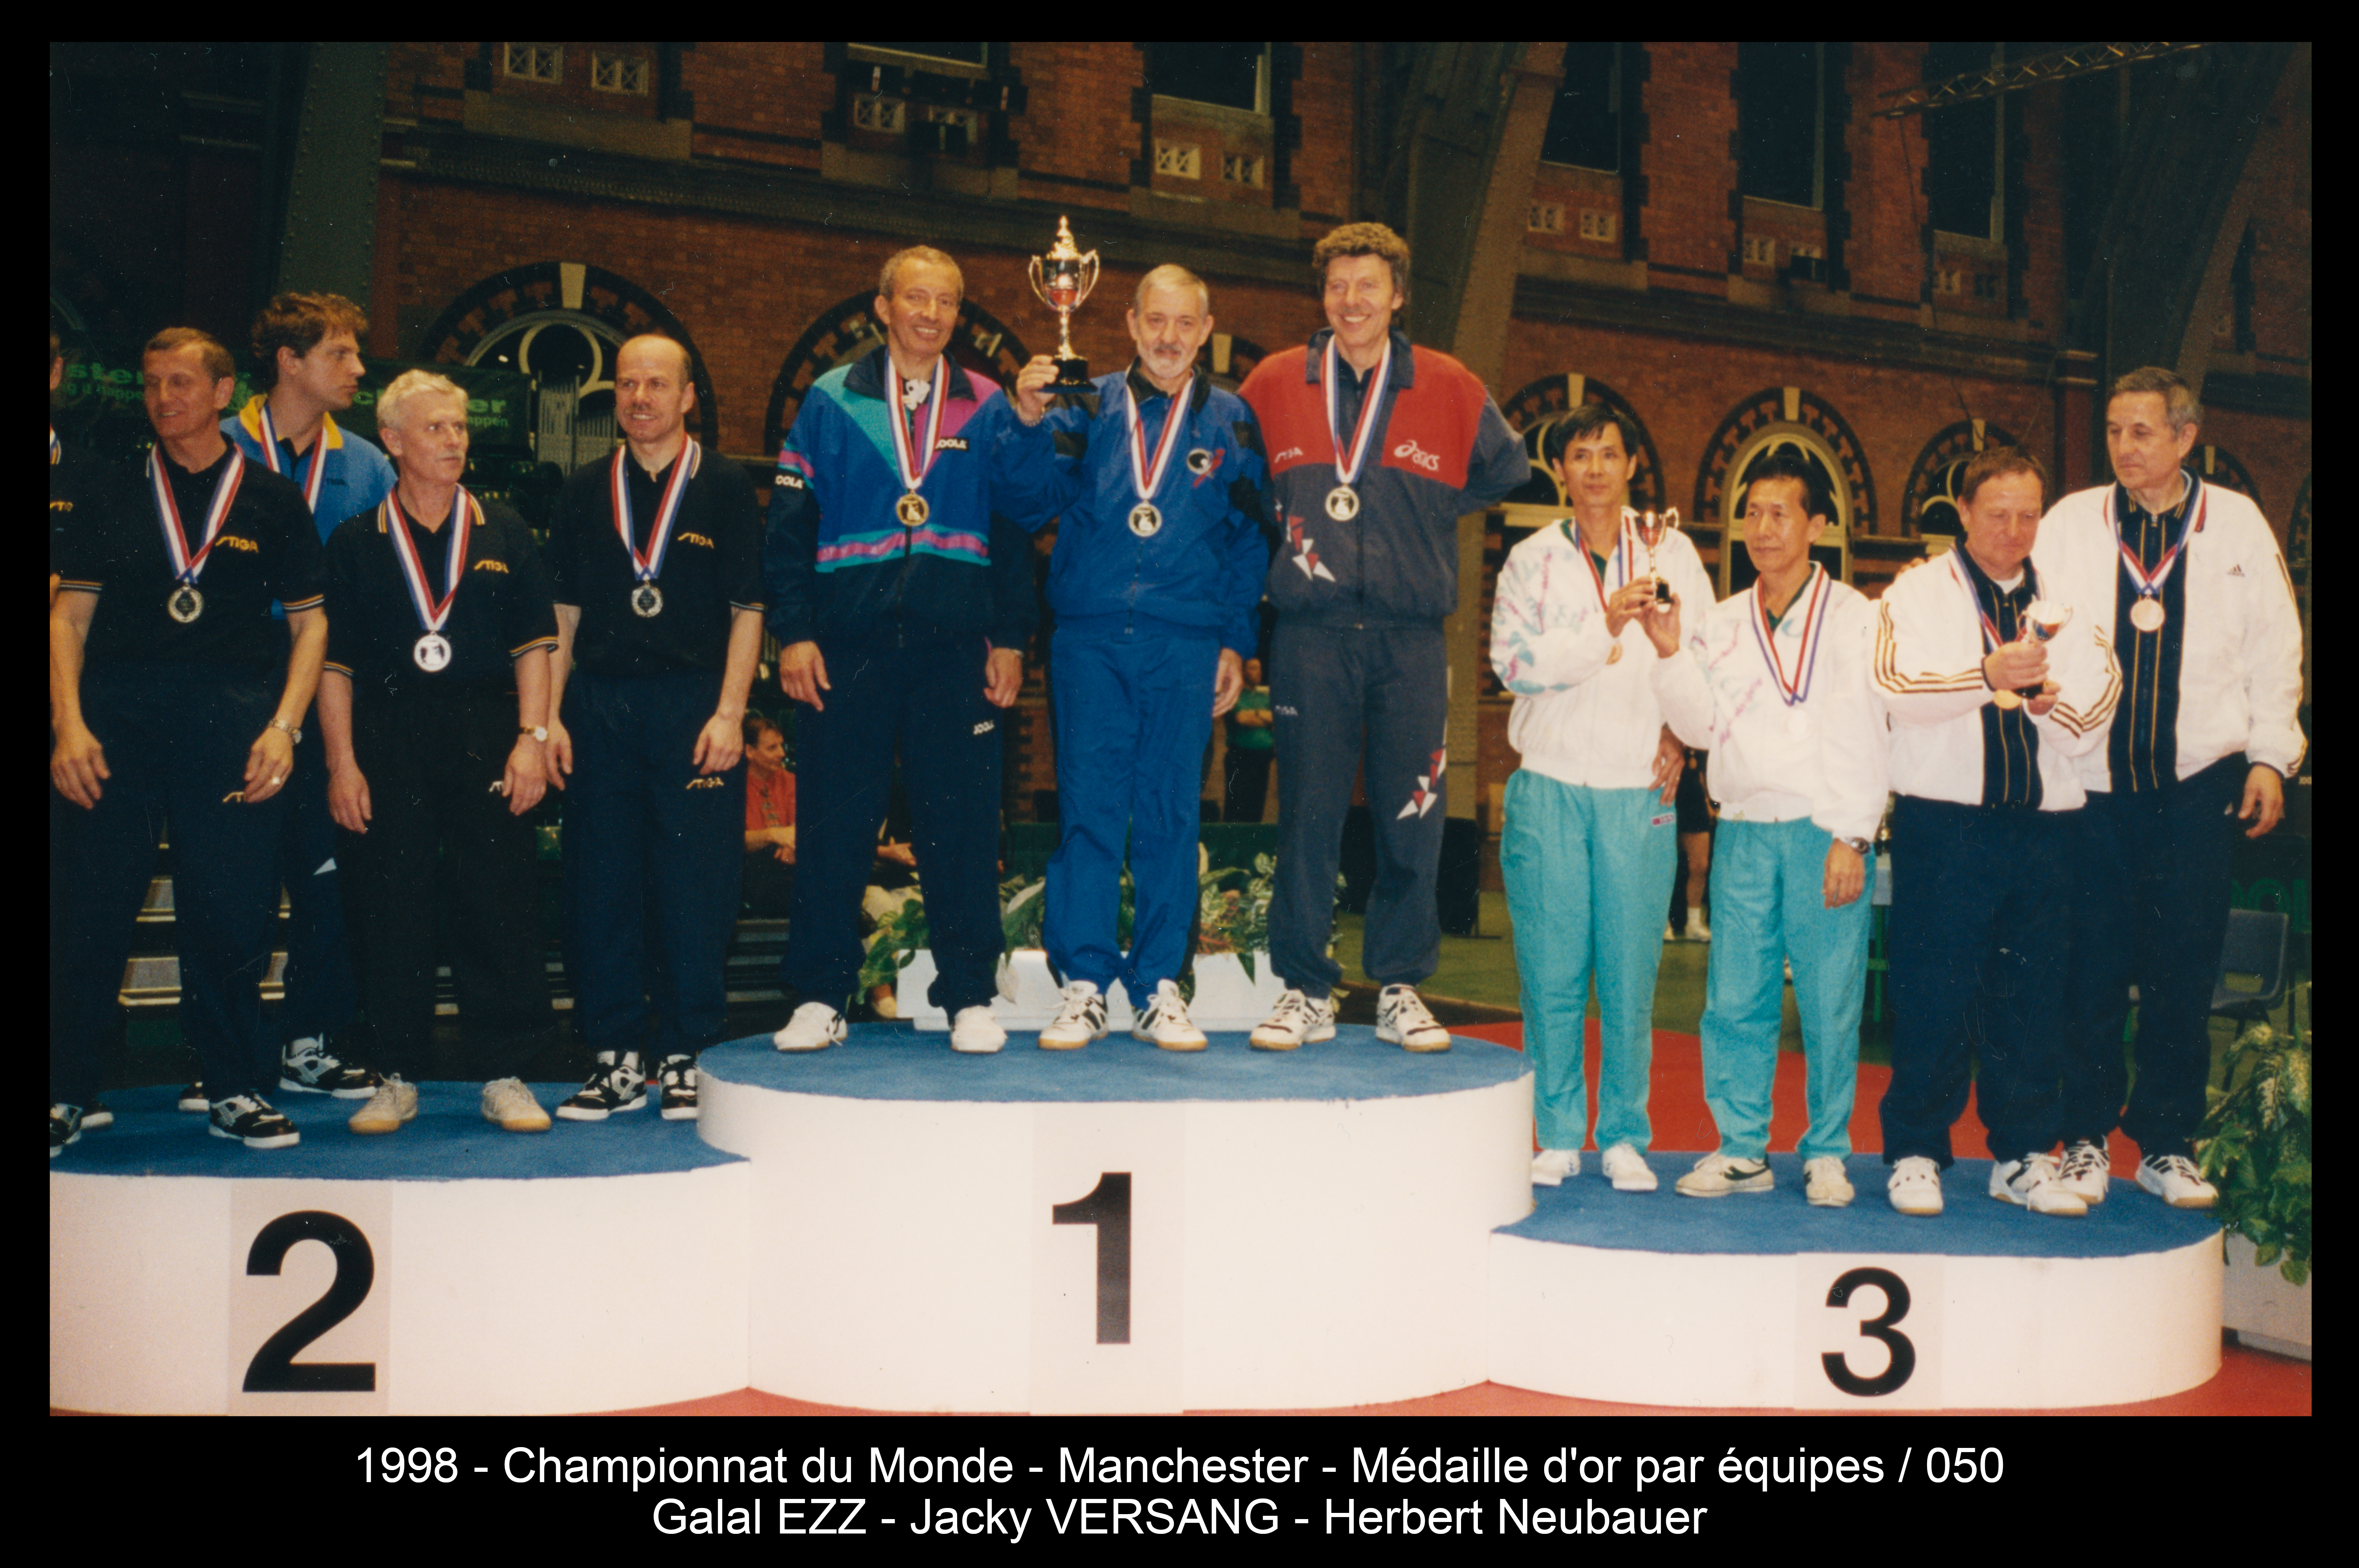 1998 - Championnat du Monde - Manchester - Médaille d'or par équipes 050 - Galal EZZ-Jacky VERSANG-Herbert Neubauer